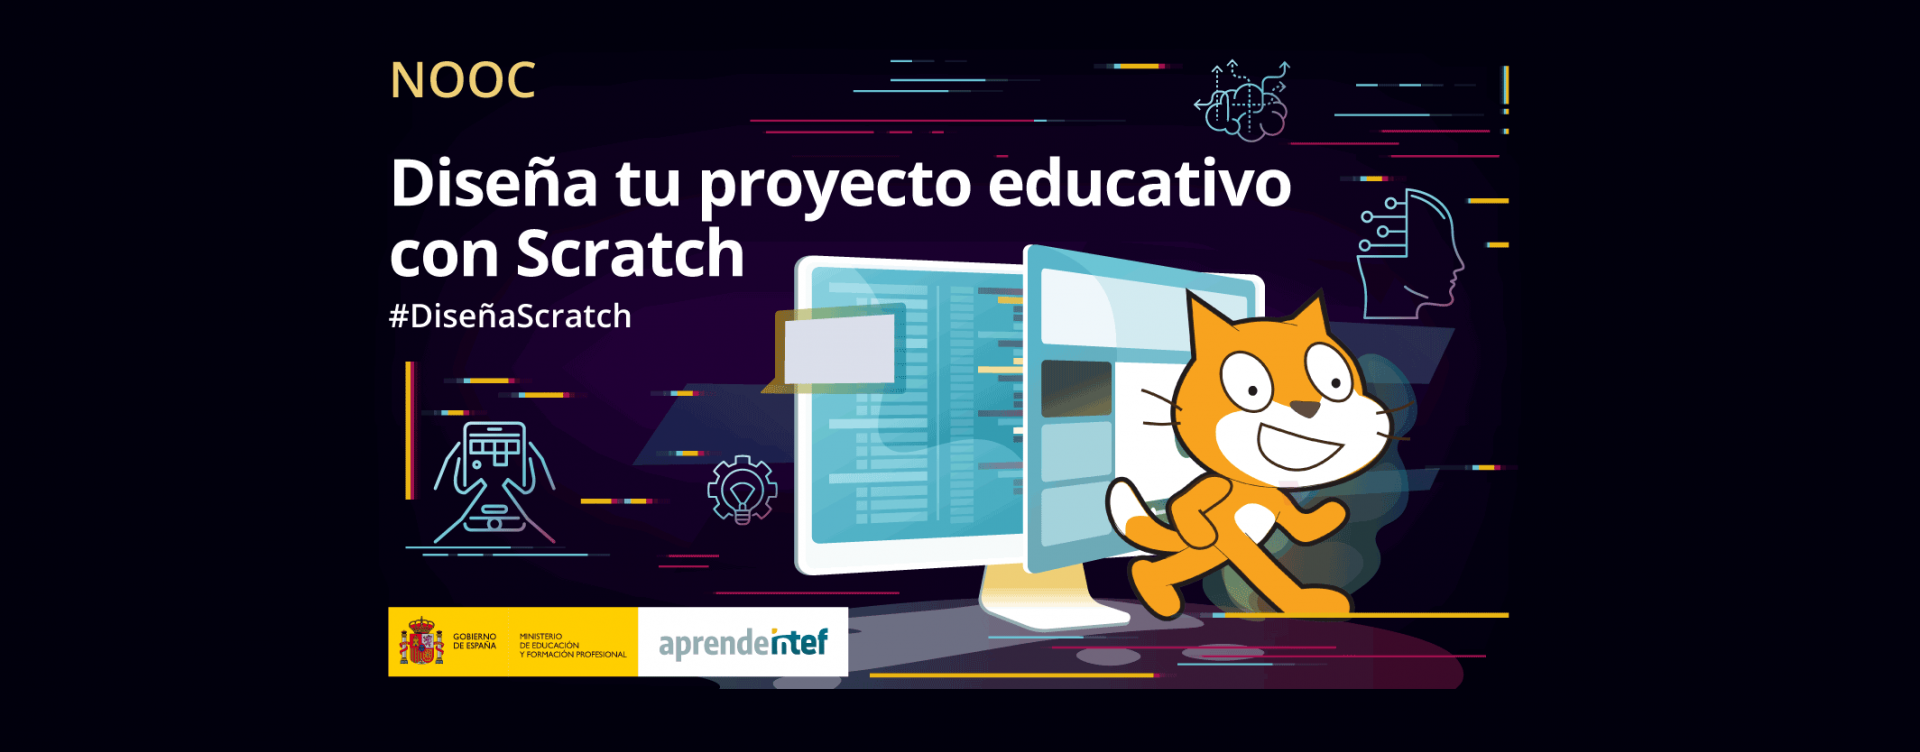 Diseña tu proyecto educativo con Scratch